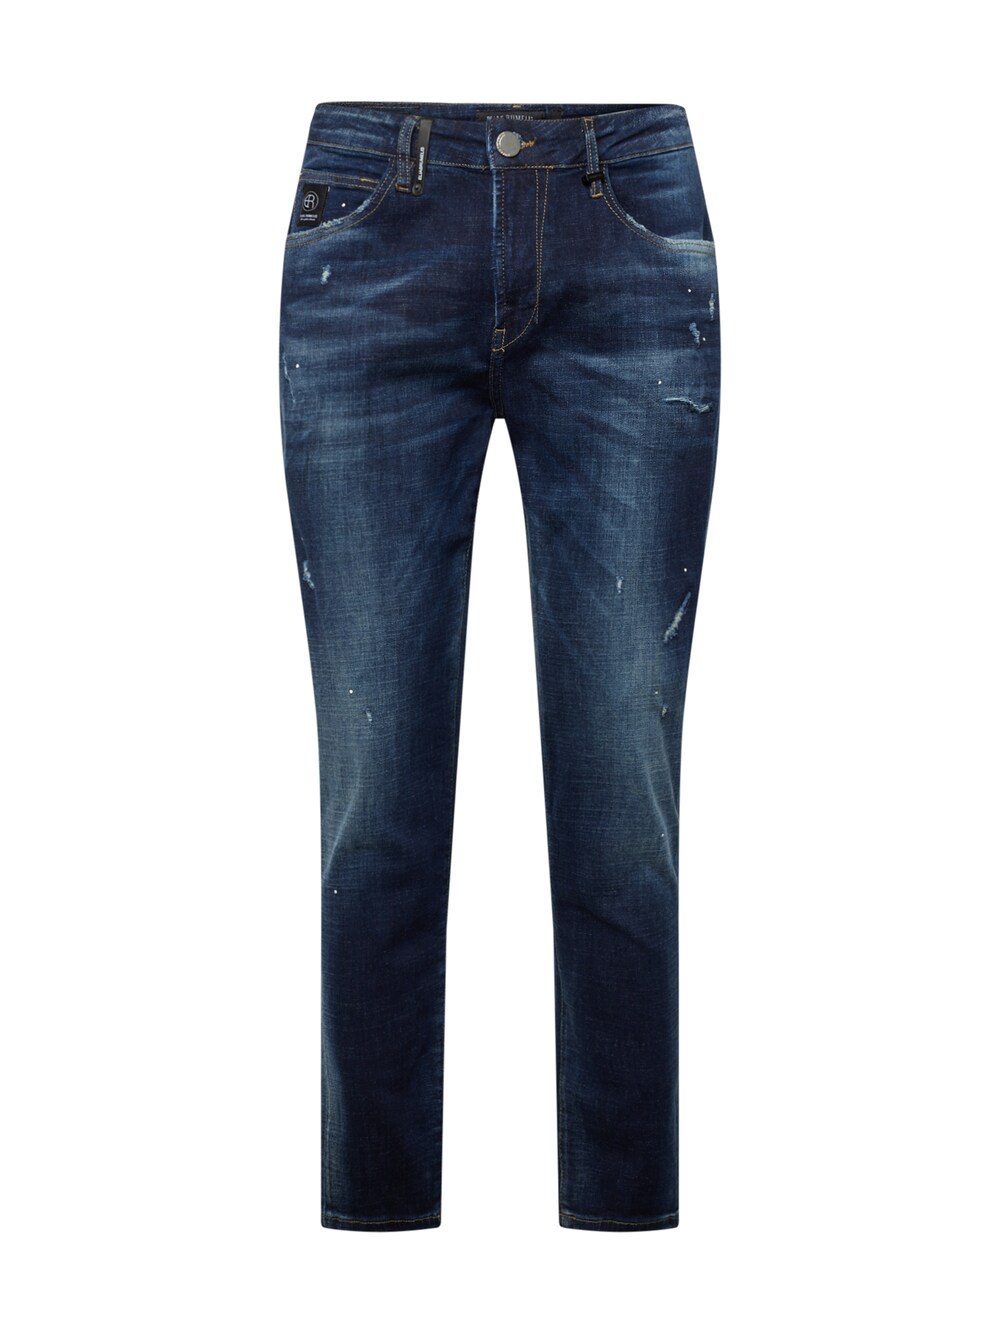 Обычные джинсы Elias Rumelis Felice Laser, темно-синий обычные джинсы elias rumelis jolando темно синий